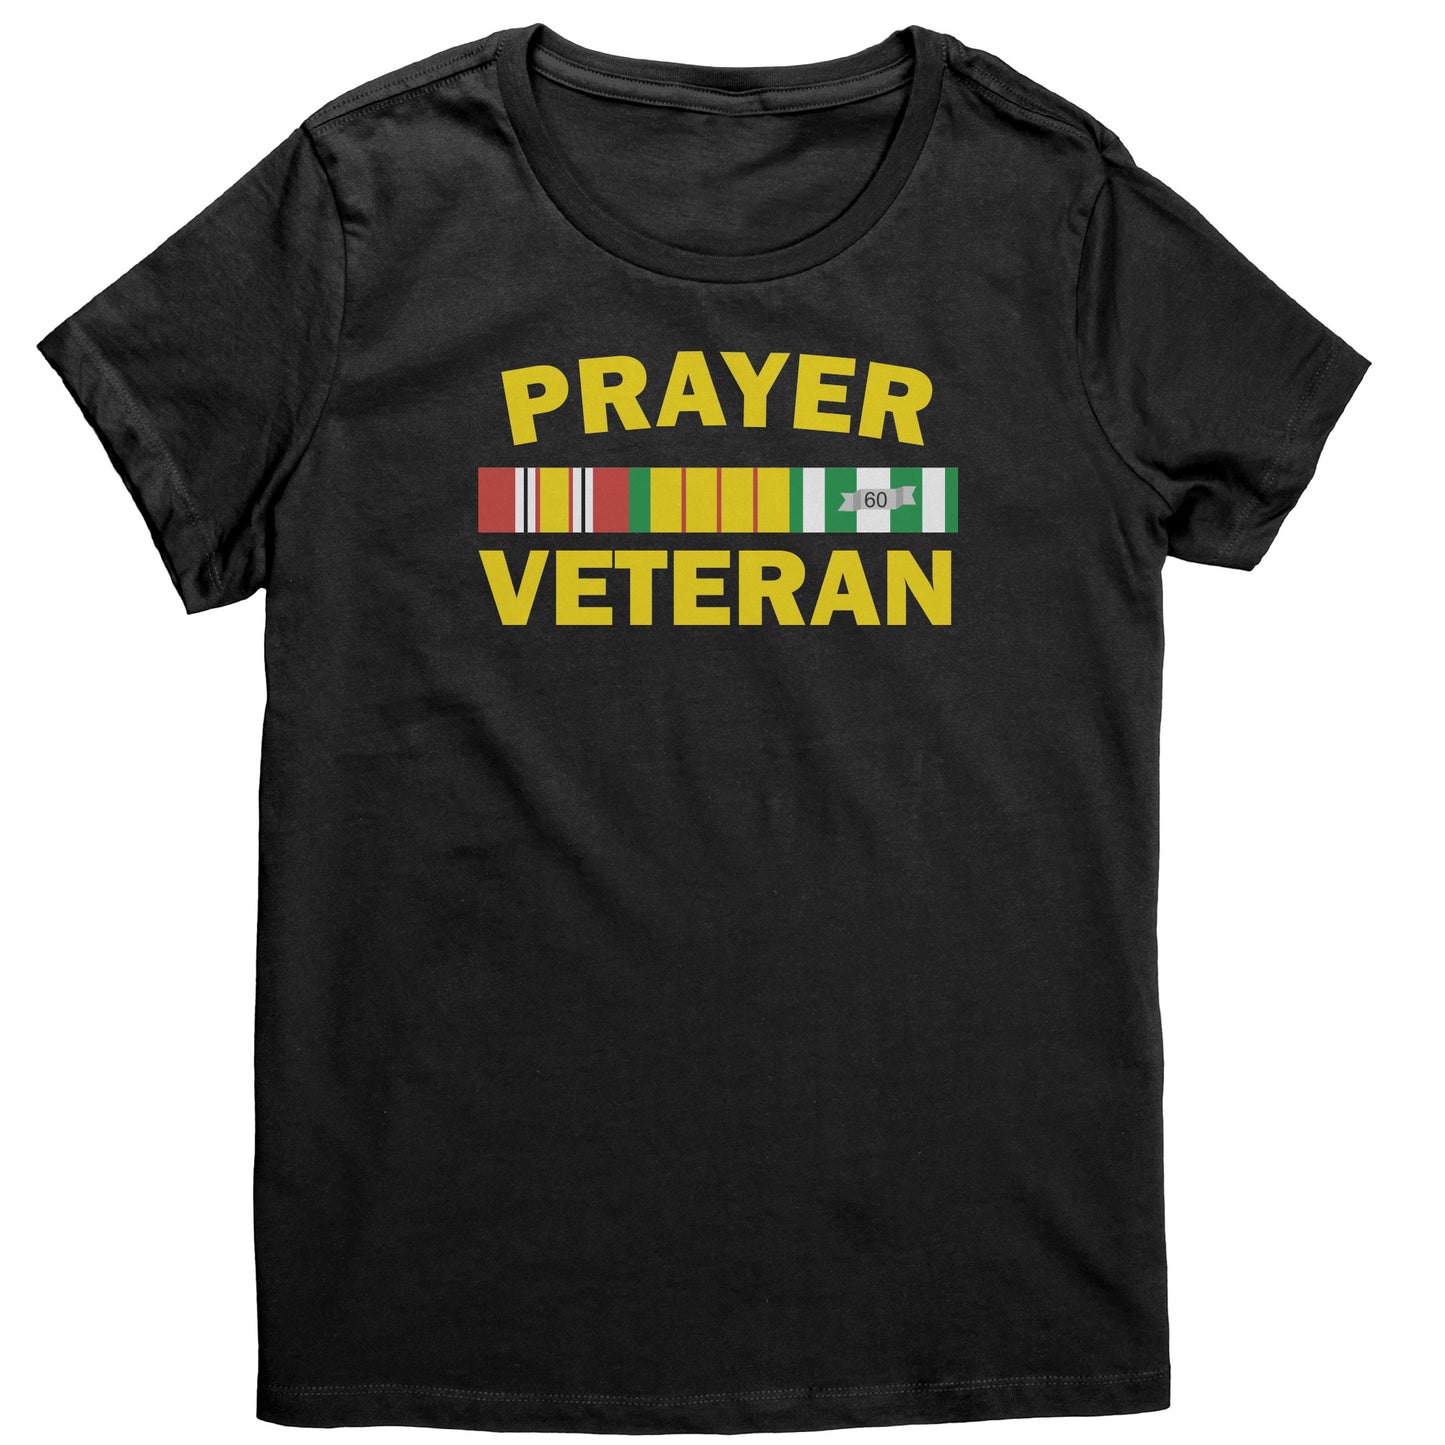 Prayer Veteran Women's T-Shirt